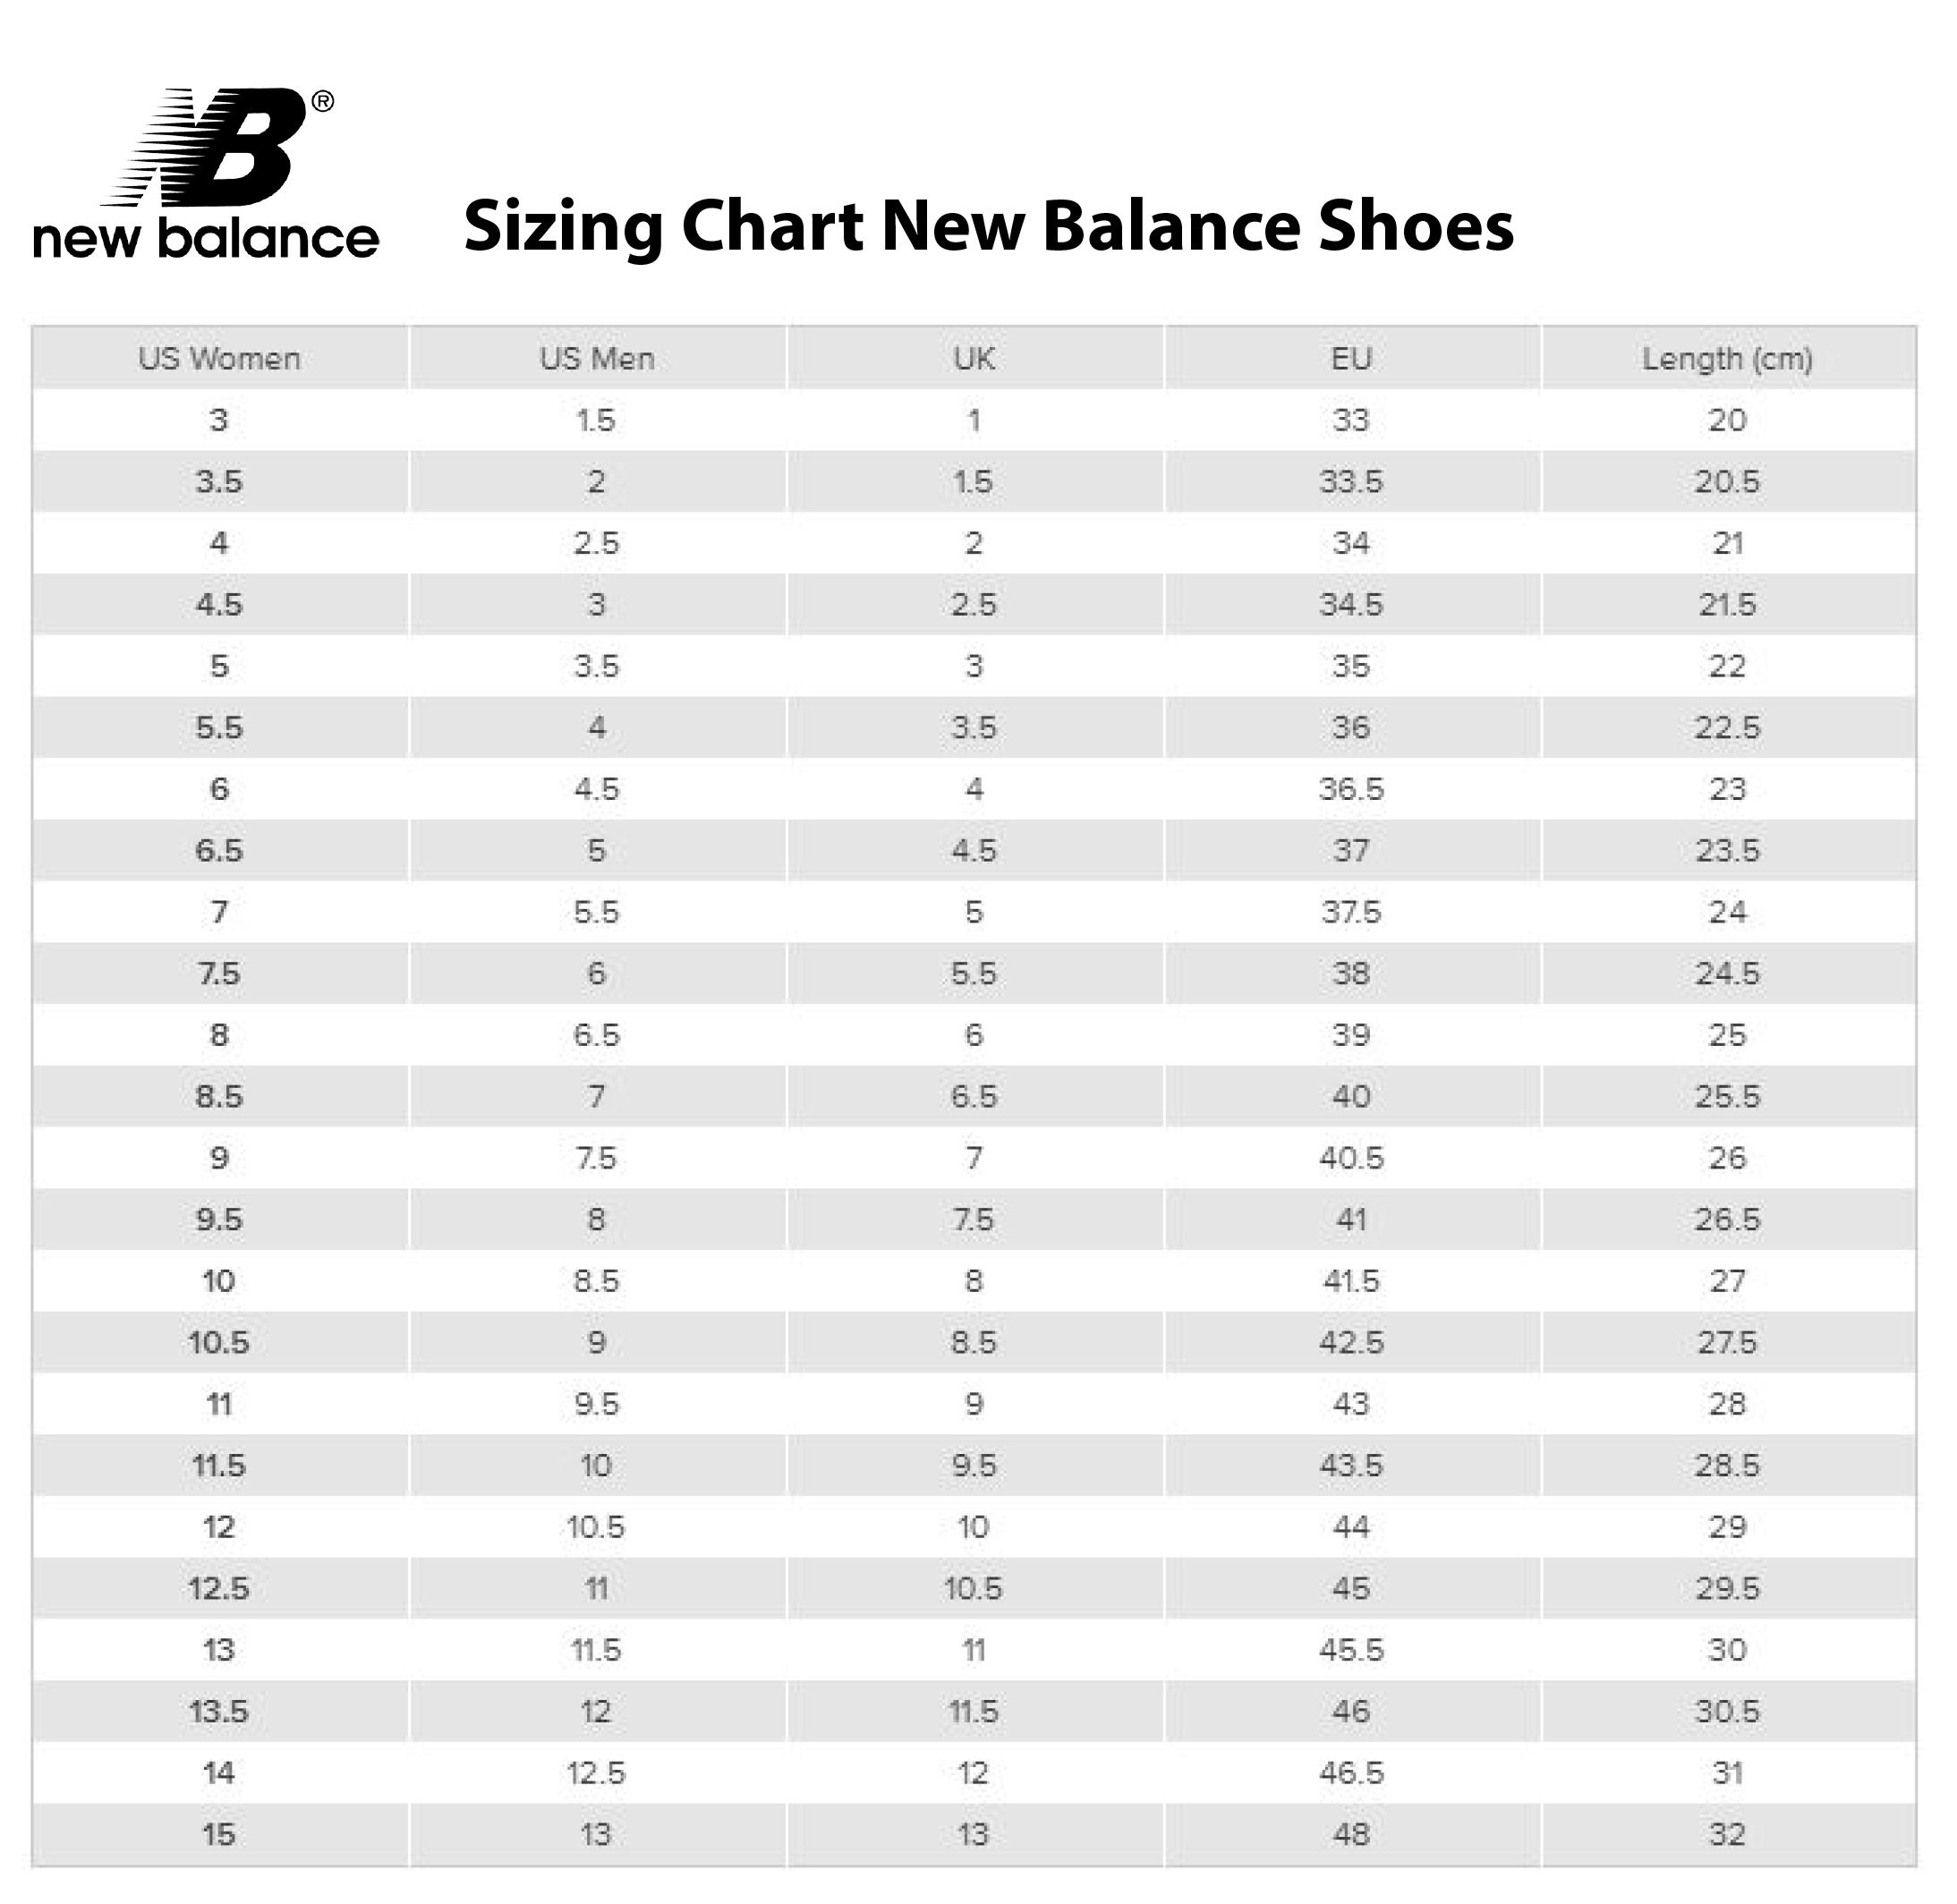 new balance foot size chart